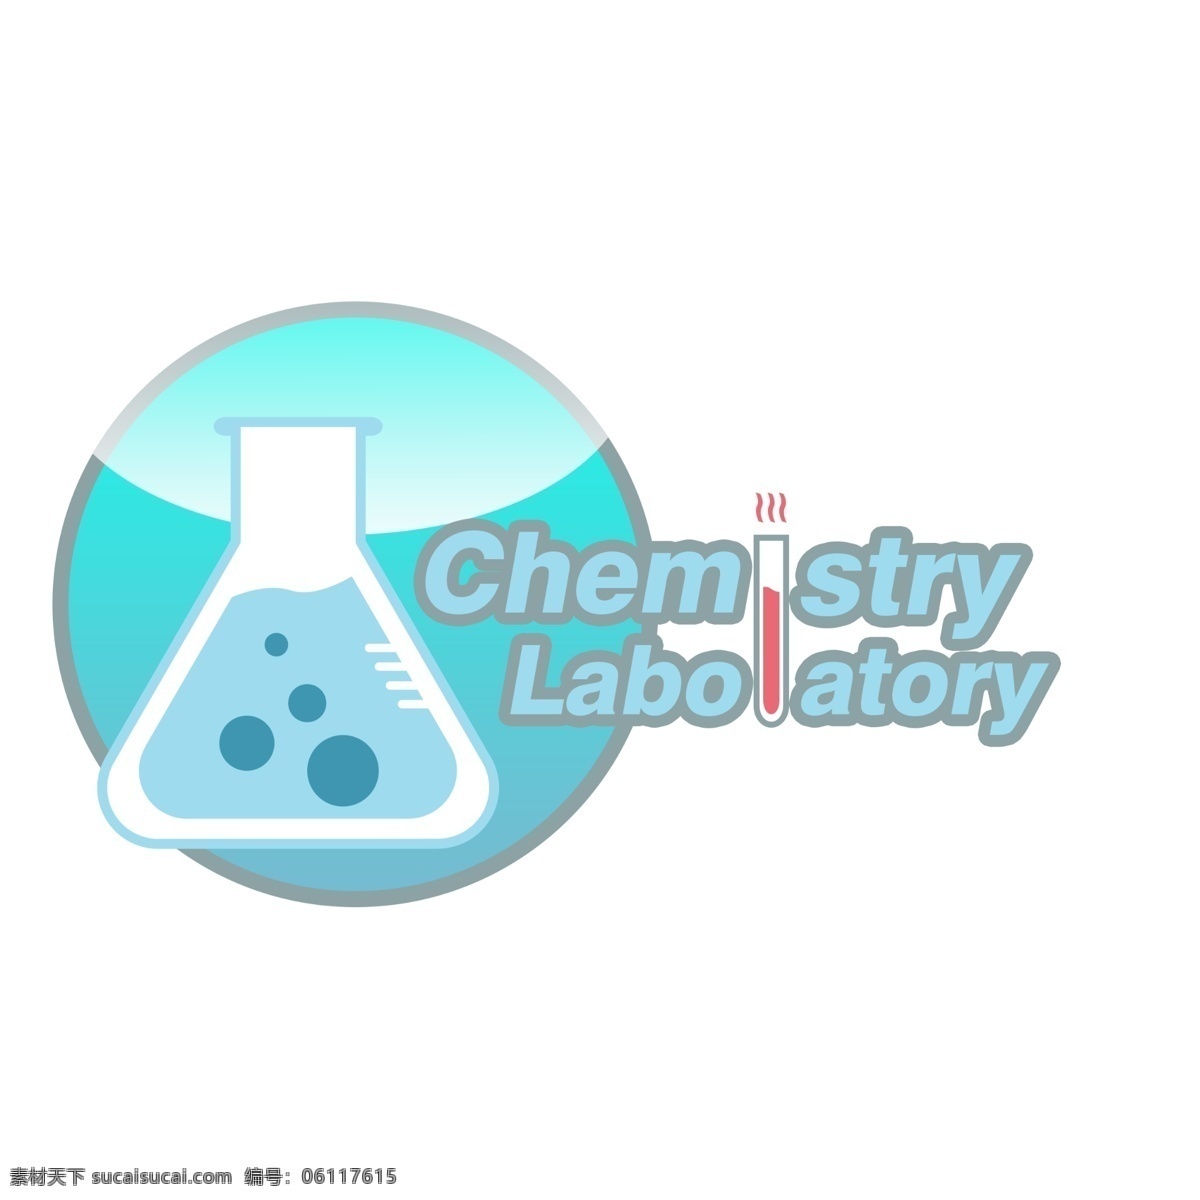 化学 实验室 logoicon 图案 图标 化学实验室 logo icon 烧杯 烧杯logo 烧杯icon 三角烧瓶 三角 烧瓶 浅蓝色 蓝色 蓝色logo 化学logo